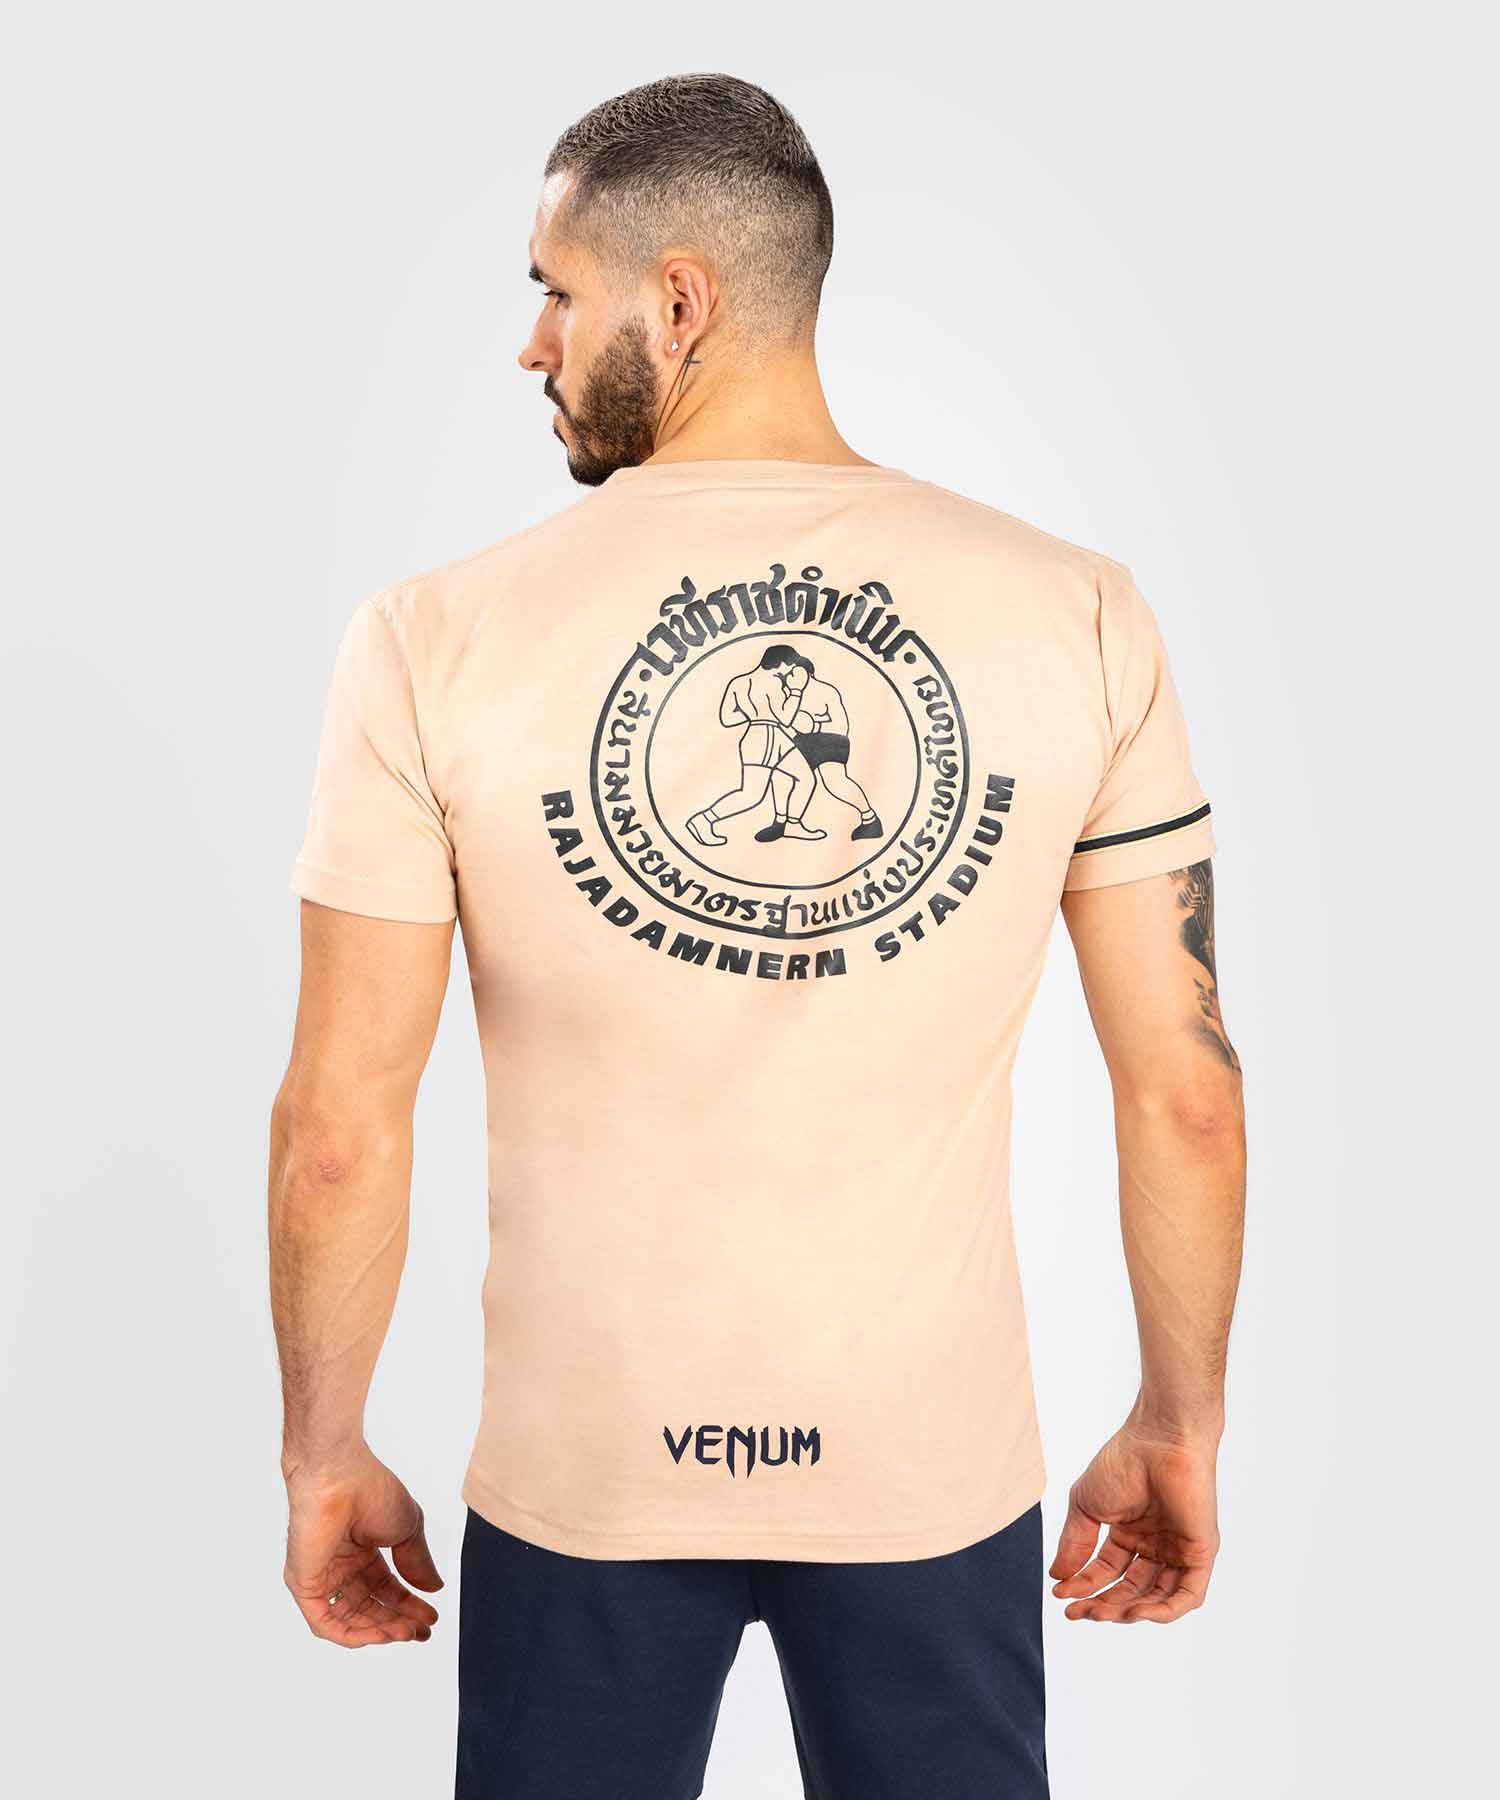 VENUM／ヴェナム　Tシャツ　　RAJADAMNERN X VENUM T-SHIRT／ラジャダムナン×ヴェナム Tシャツ（サンド）